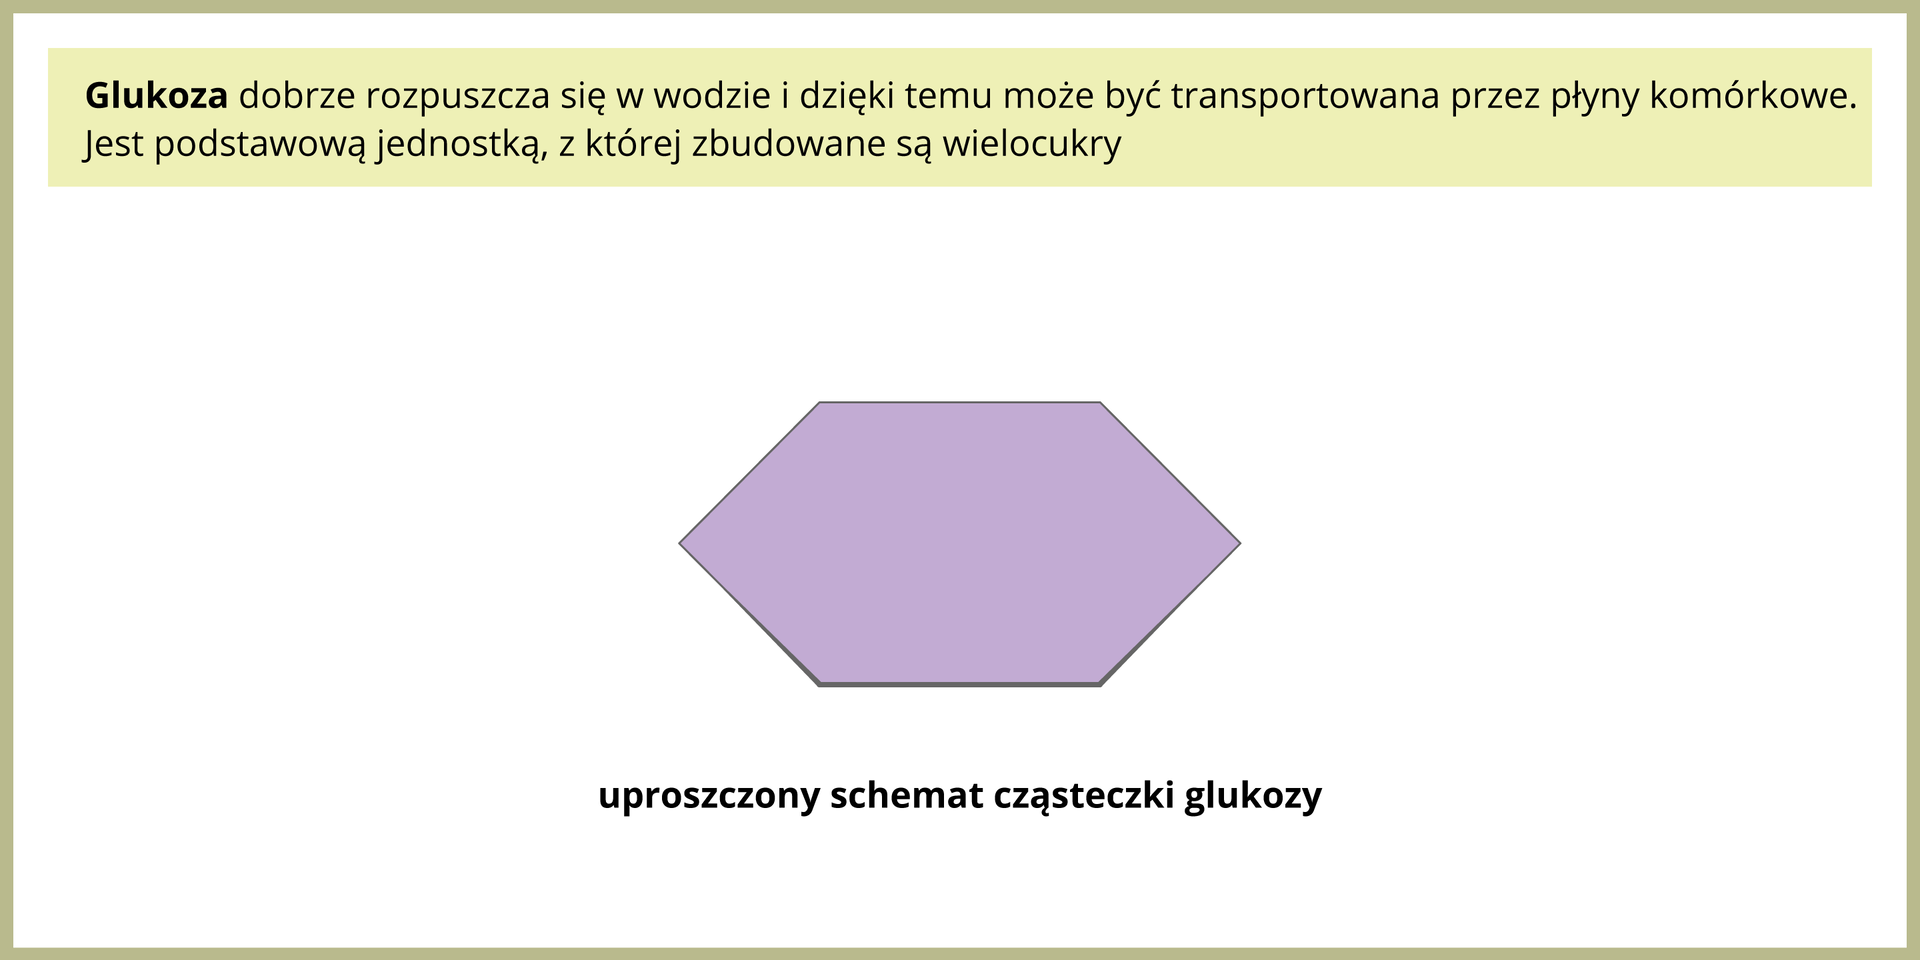 Ilustracja przedstawia fioletowy sześciokąt. Jest to schemat cząsteczki glukozy.